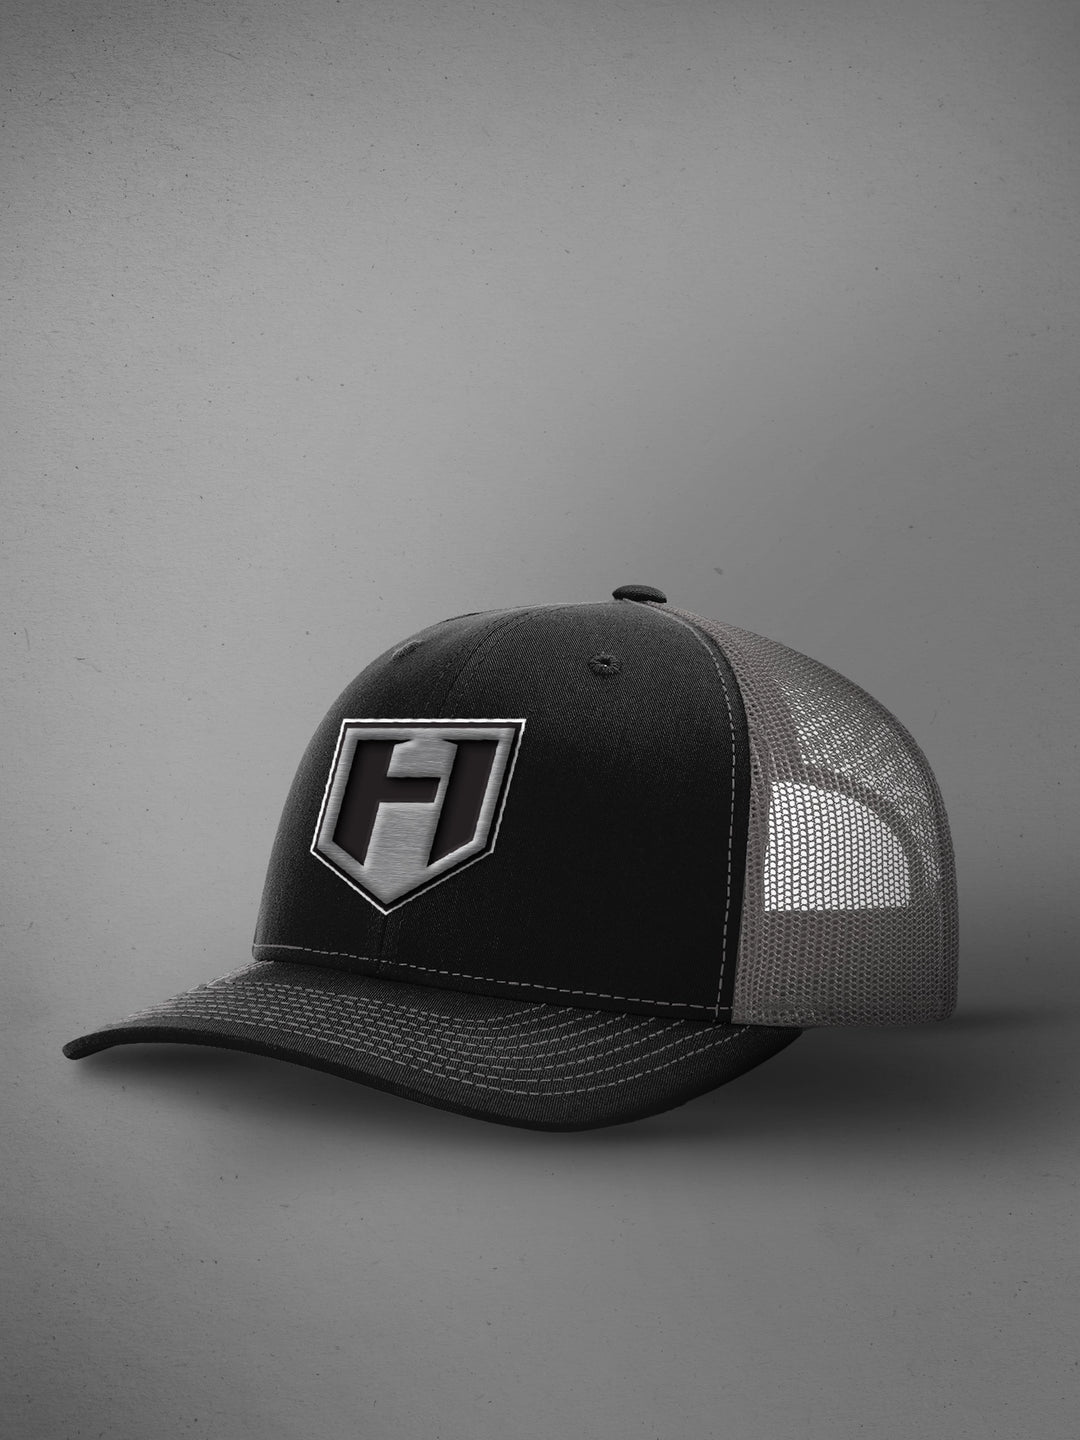 Shield Trucker Hat One Size Black Grey